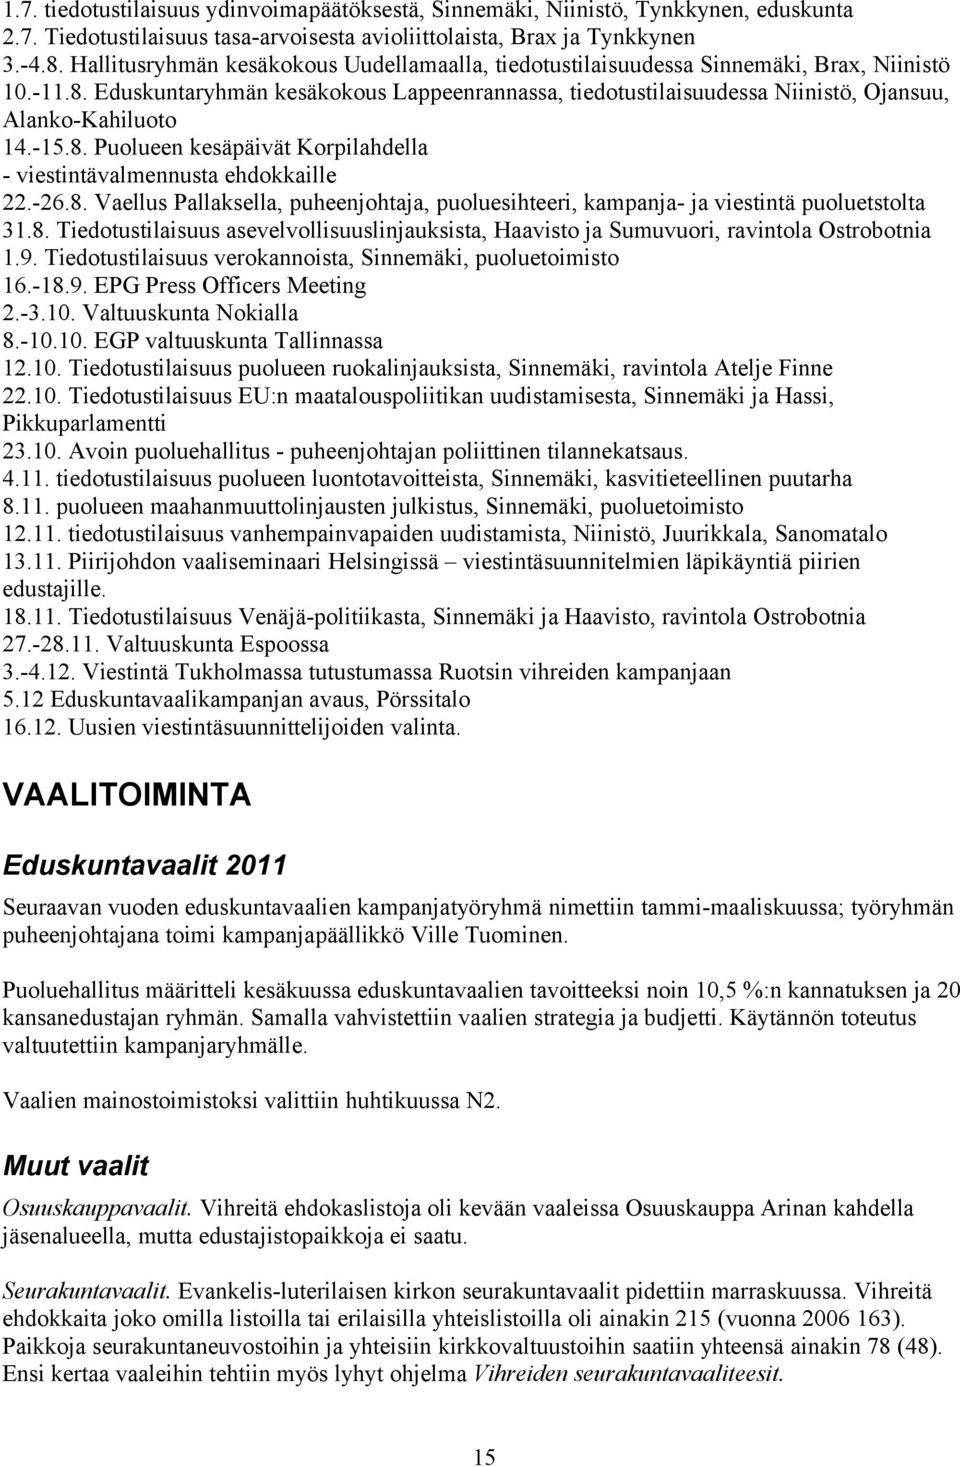 Eduskuntaryhmän kesäkokous Lappeenrannassa, tiedotustilaisuudessa Niinistö, Ojansuu, Alanko-Kahiluoto 14.-15.8.